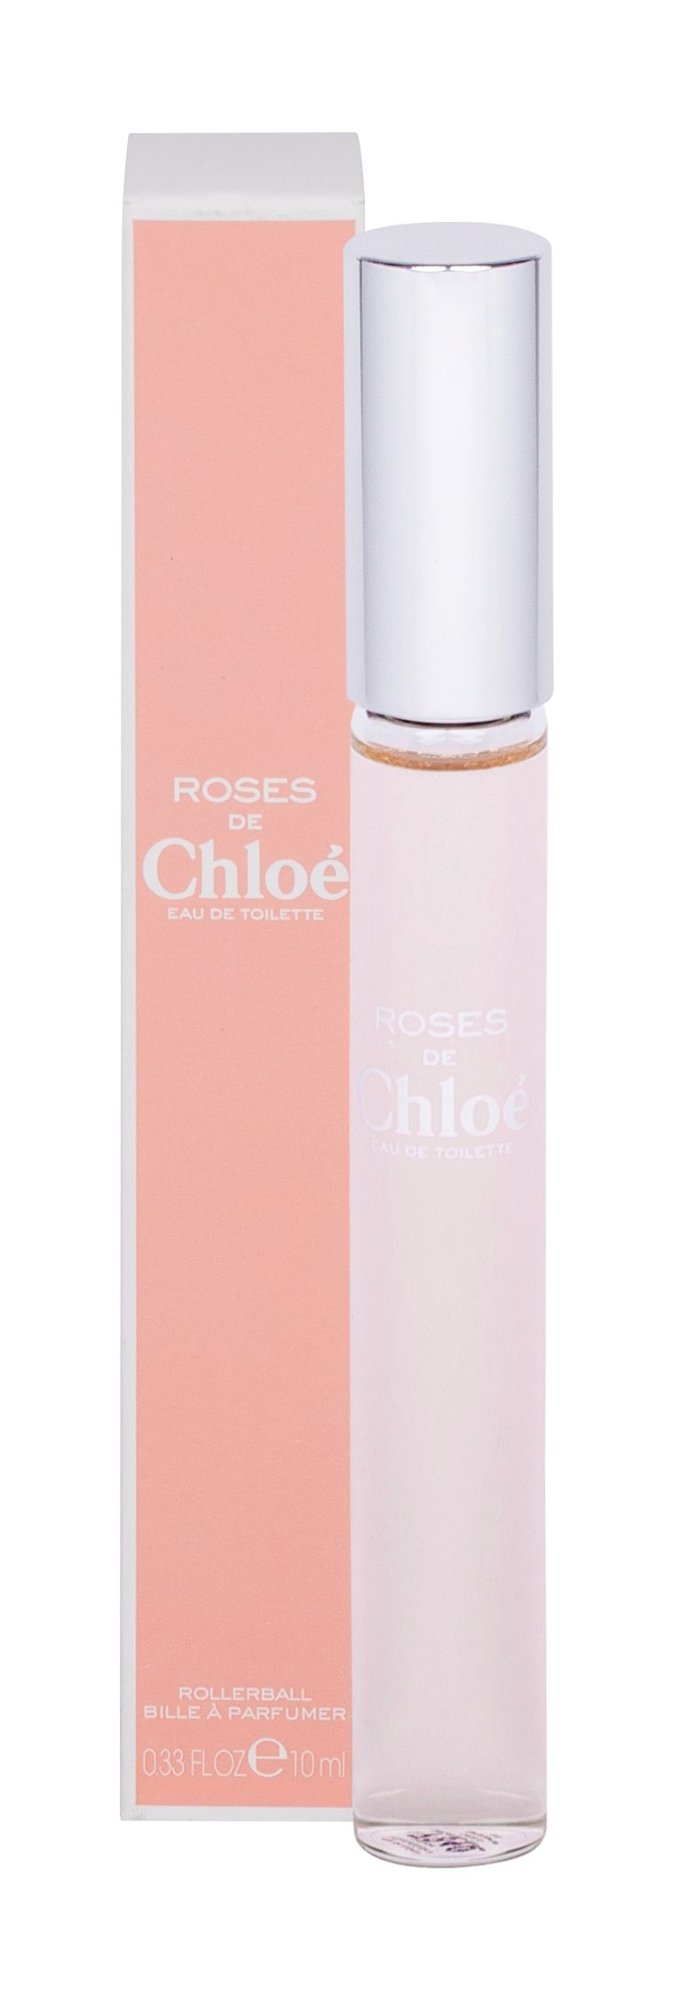 Chloé Roses De Chloe, Toaletní voda 10ml, Rollerball